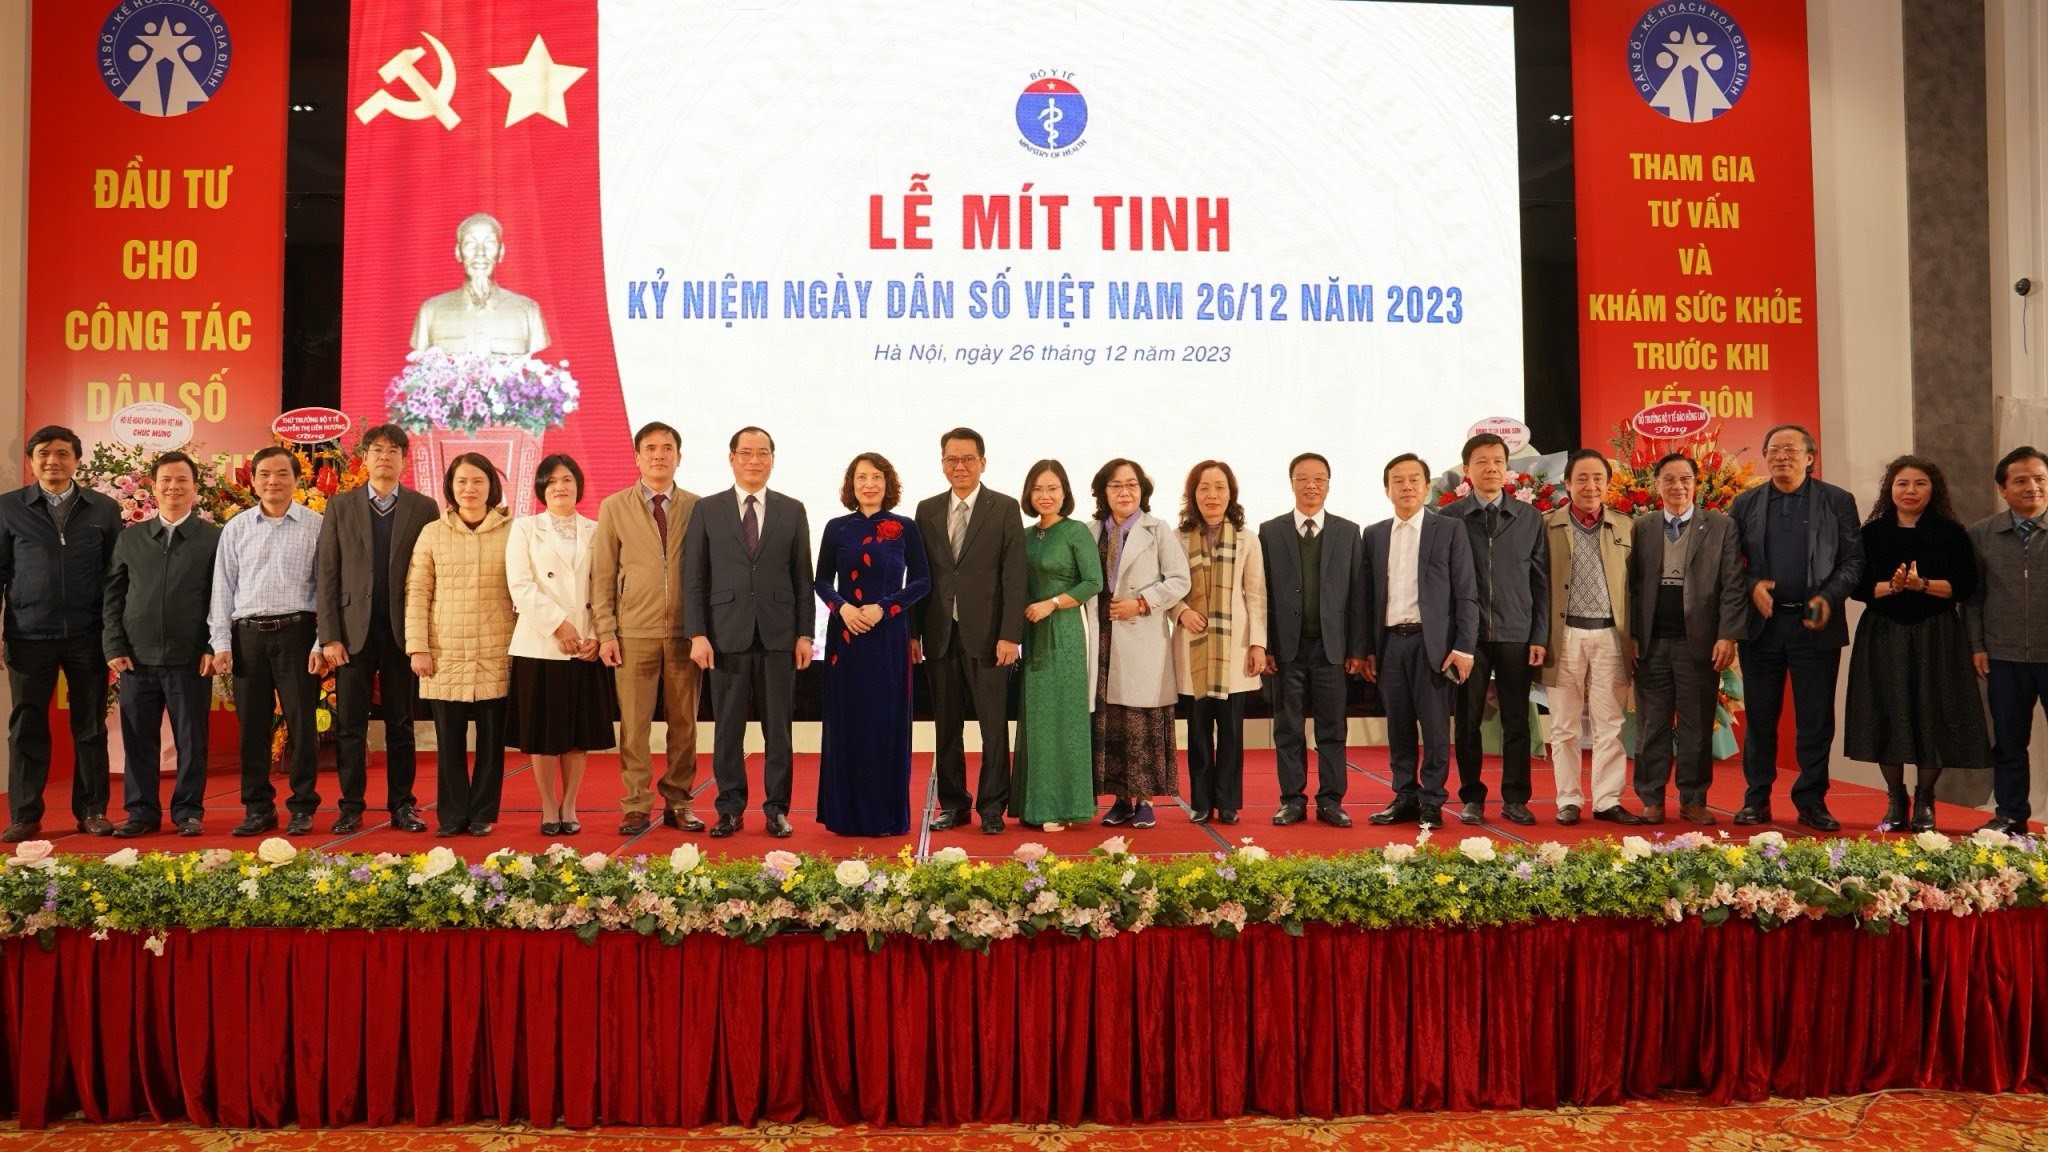 Mít tinh kỷ niệm Ngày Dân số Việt Nam và Tổng kết công tác dân số năm 2023, triển khai kế hoạch năm 2024